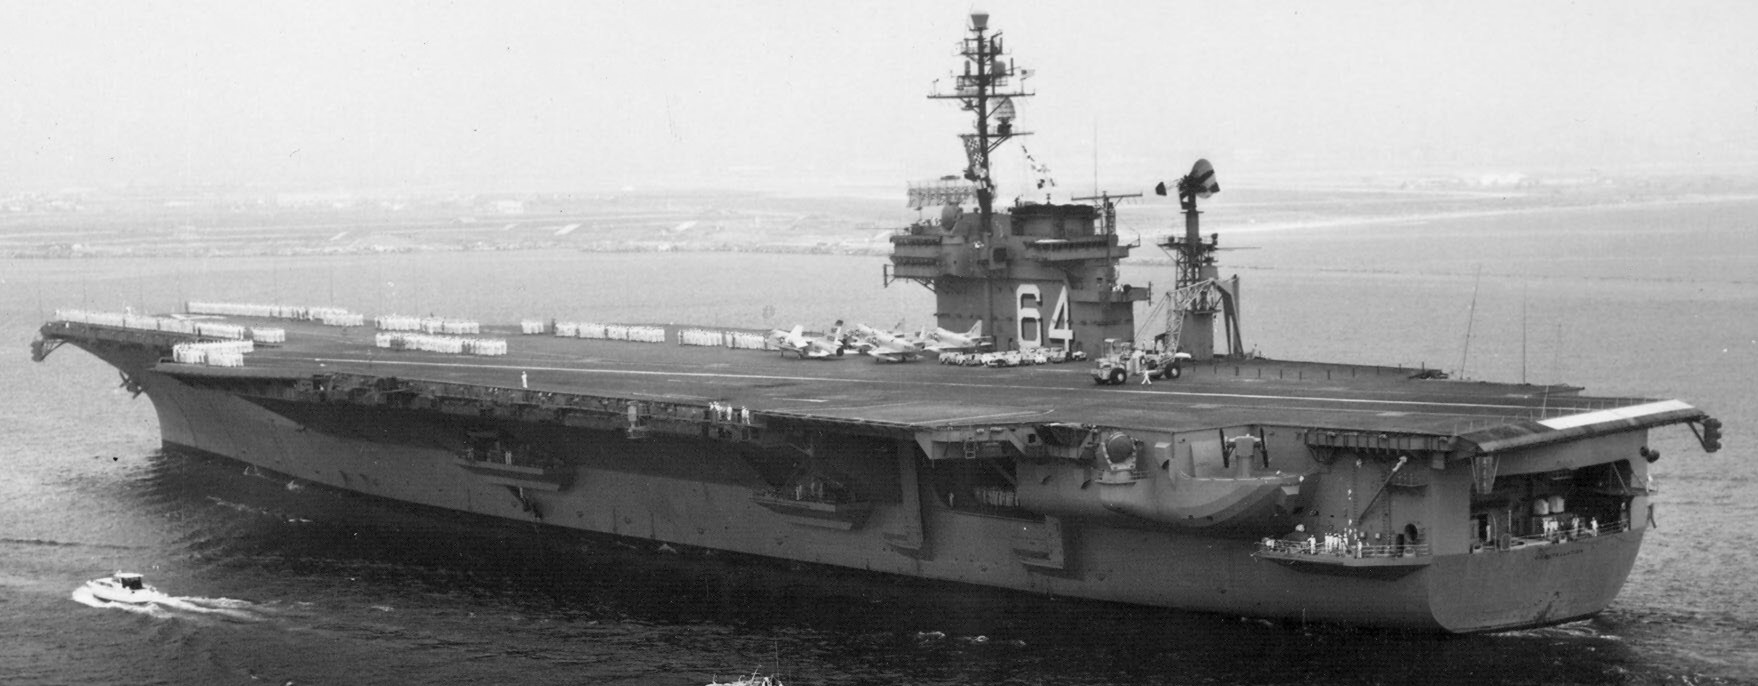 cv-64 uss constellation kitty hawk class aircraft carrier us navy 1962 27